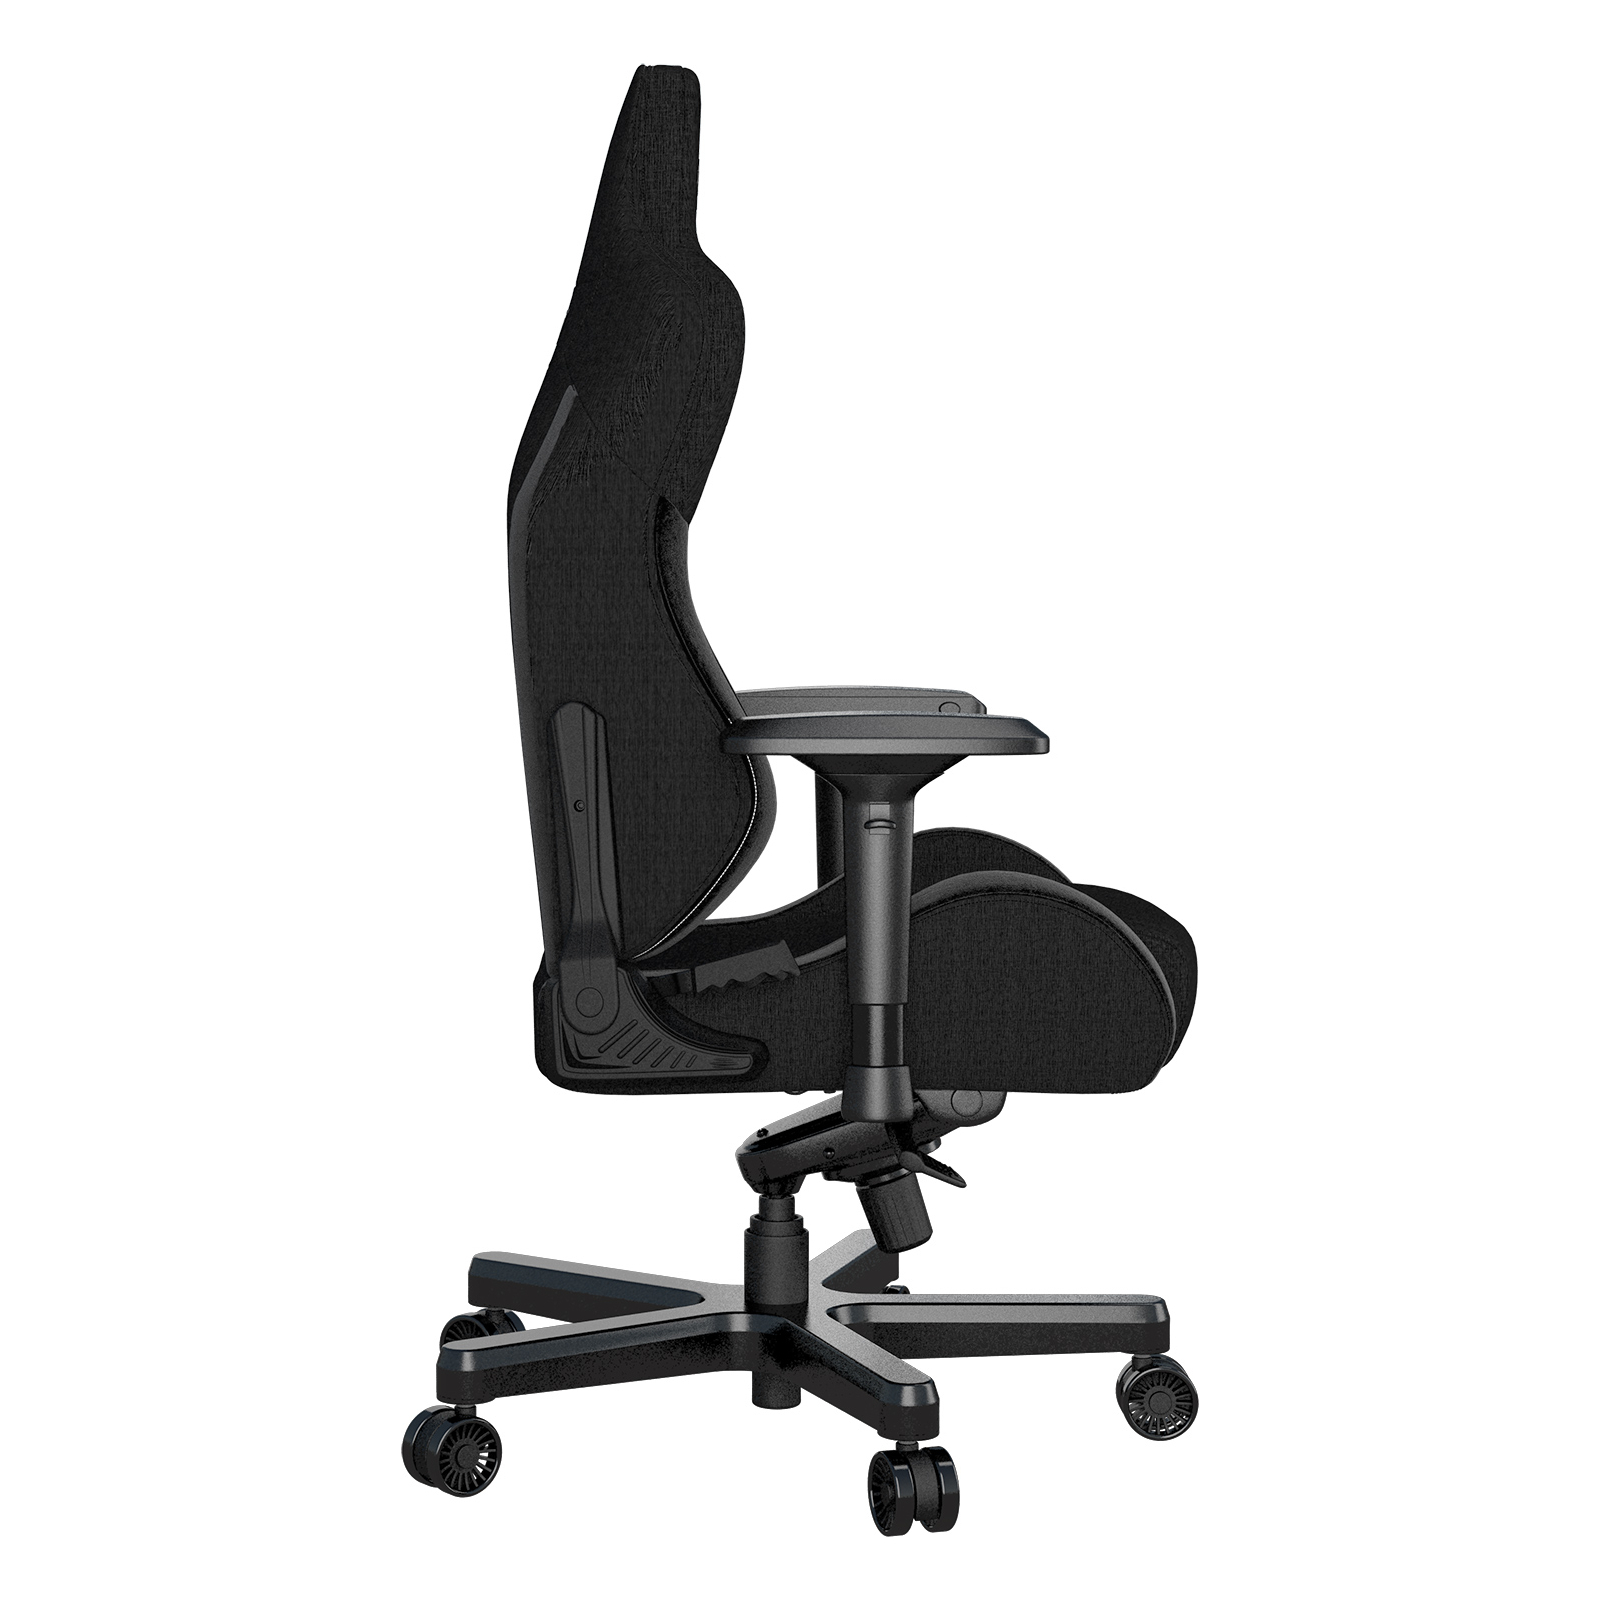 Кресло игровое Anda Seat T-Pro 2 Grey/Black Size XL (AD12XLLA-01-GB-F) изображение 5